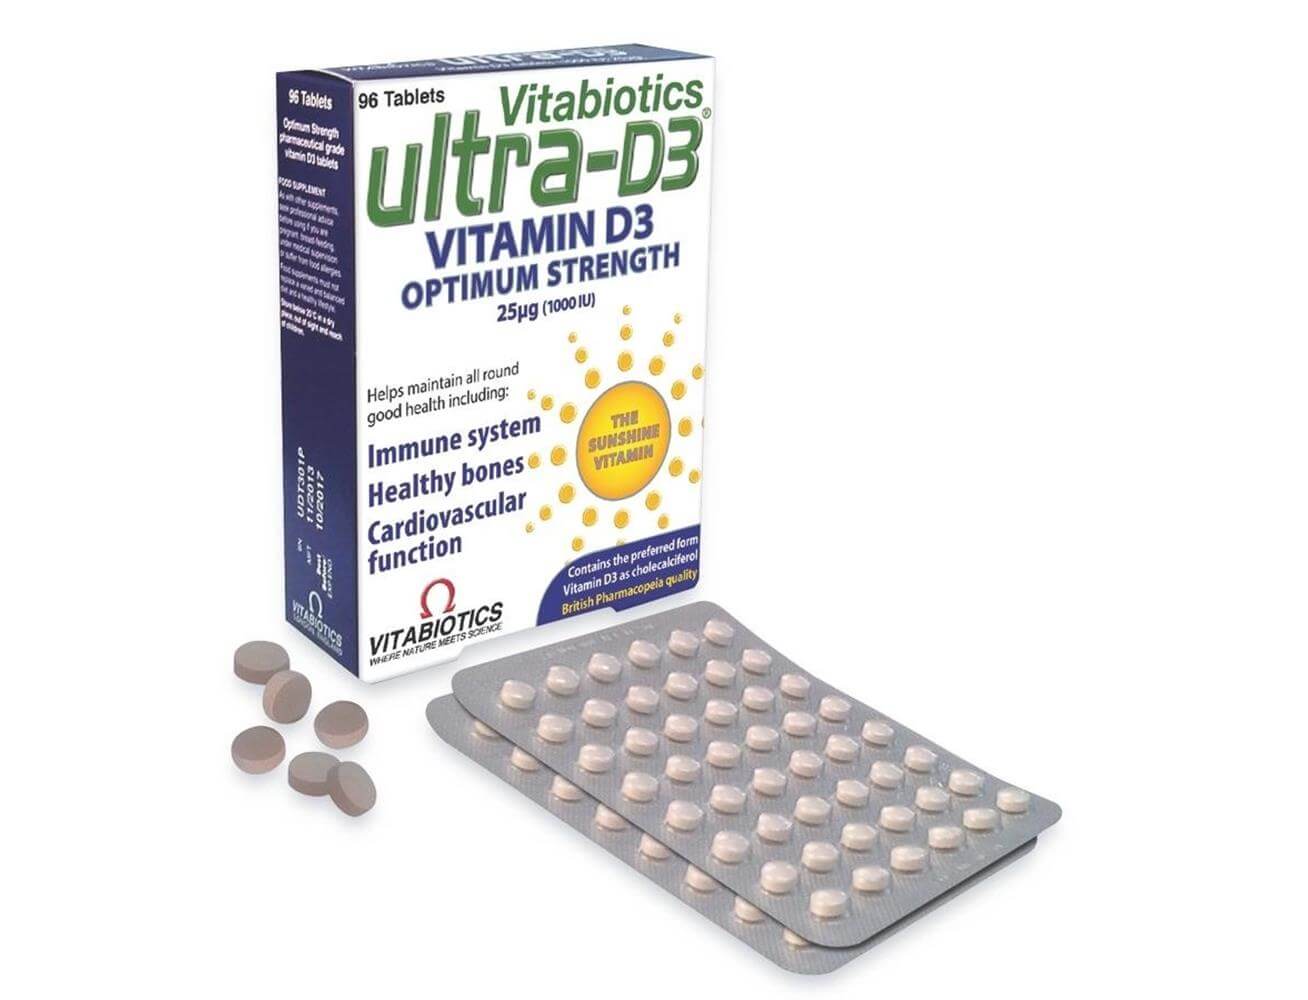 Vitabiotics Ultra-D3 Vitamine D3 الترا د3 لصحة العظام ودعم الجهاز المناعي